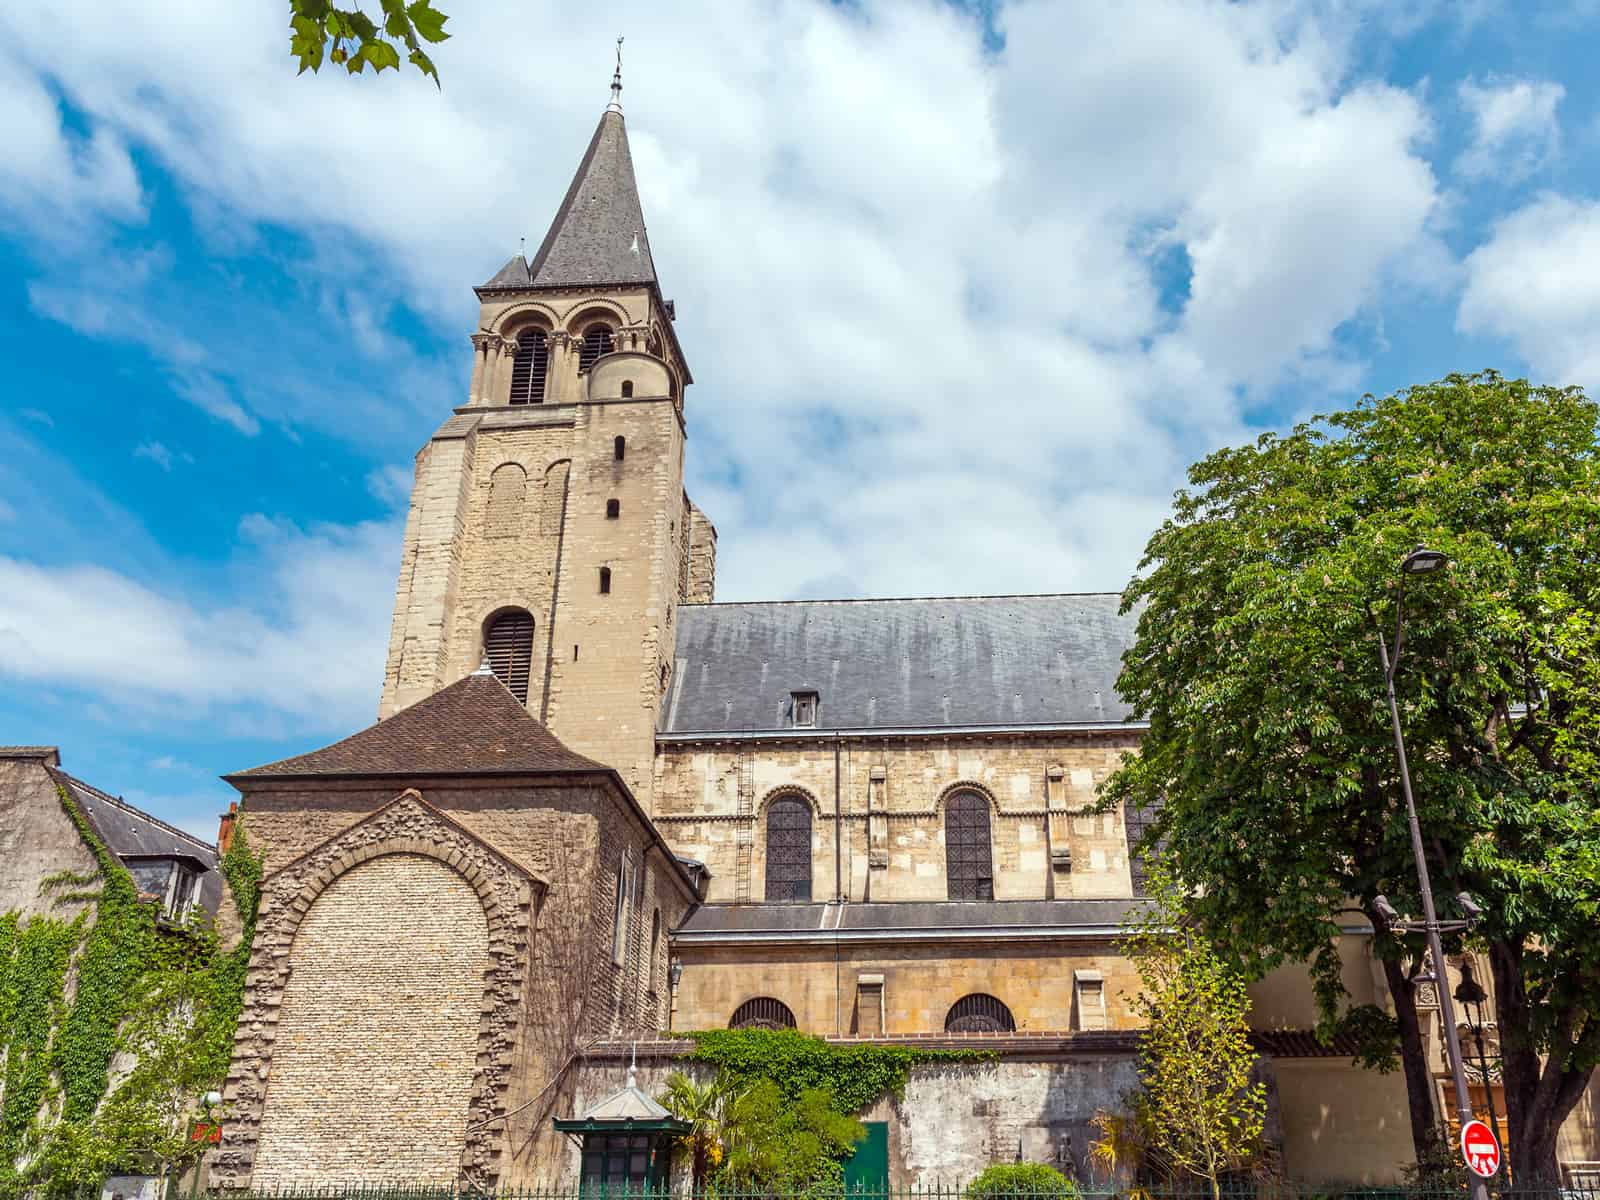 Stroll 11 Church of Saint Germain-des-Pres